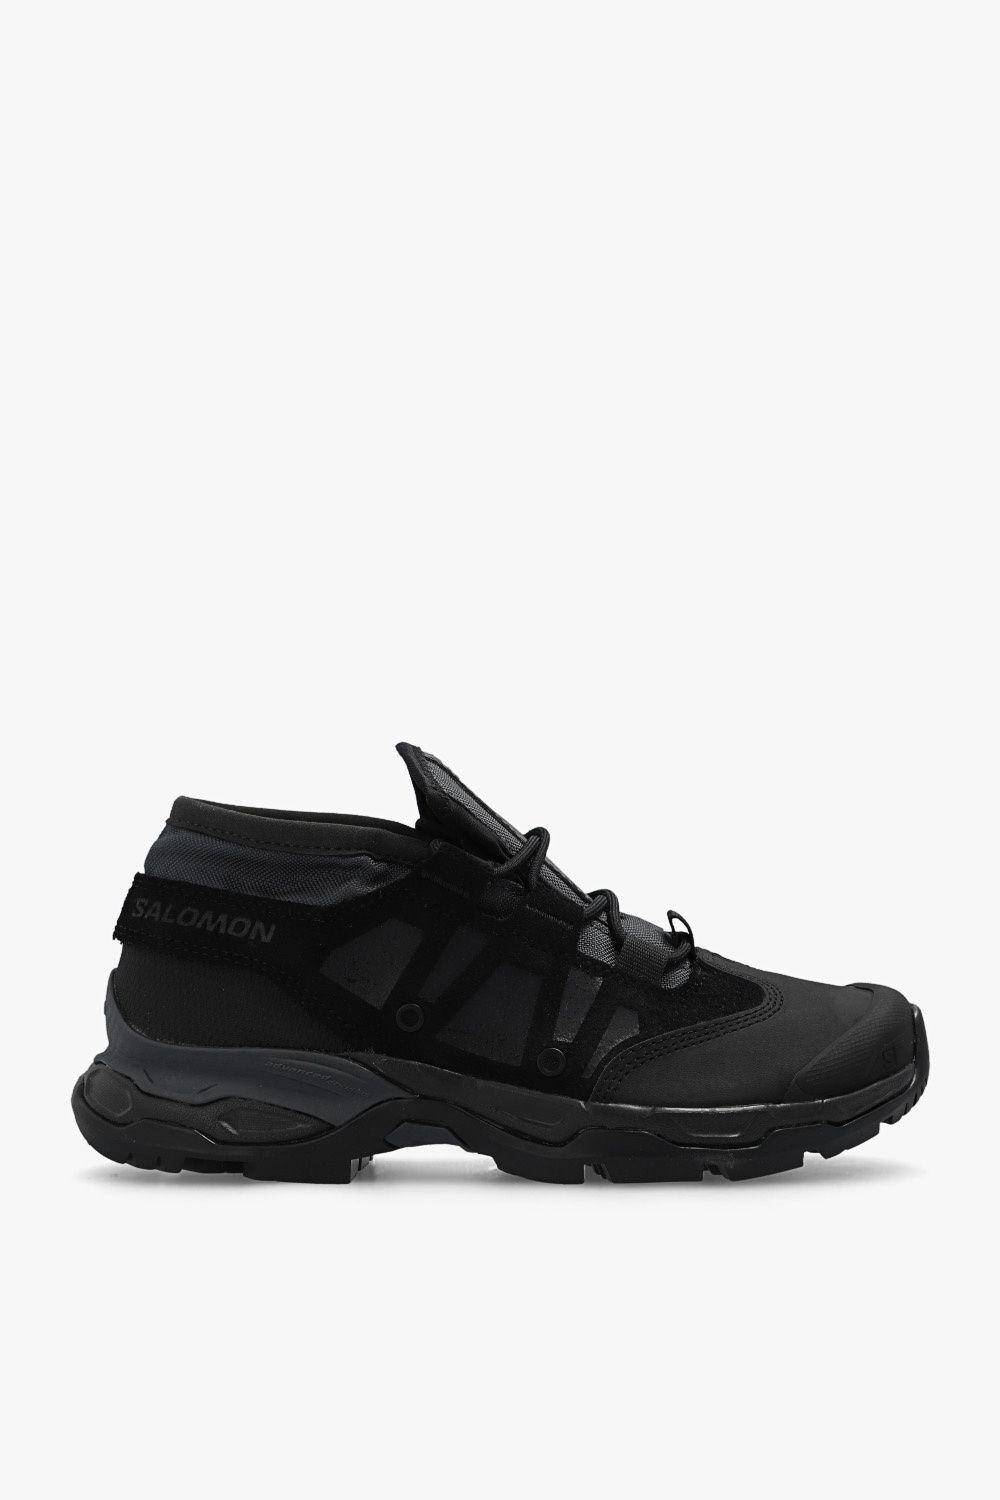 Salomon 'jungle Ultra Low Advanced' Sneakers in Black | Lyst